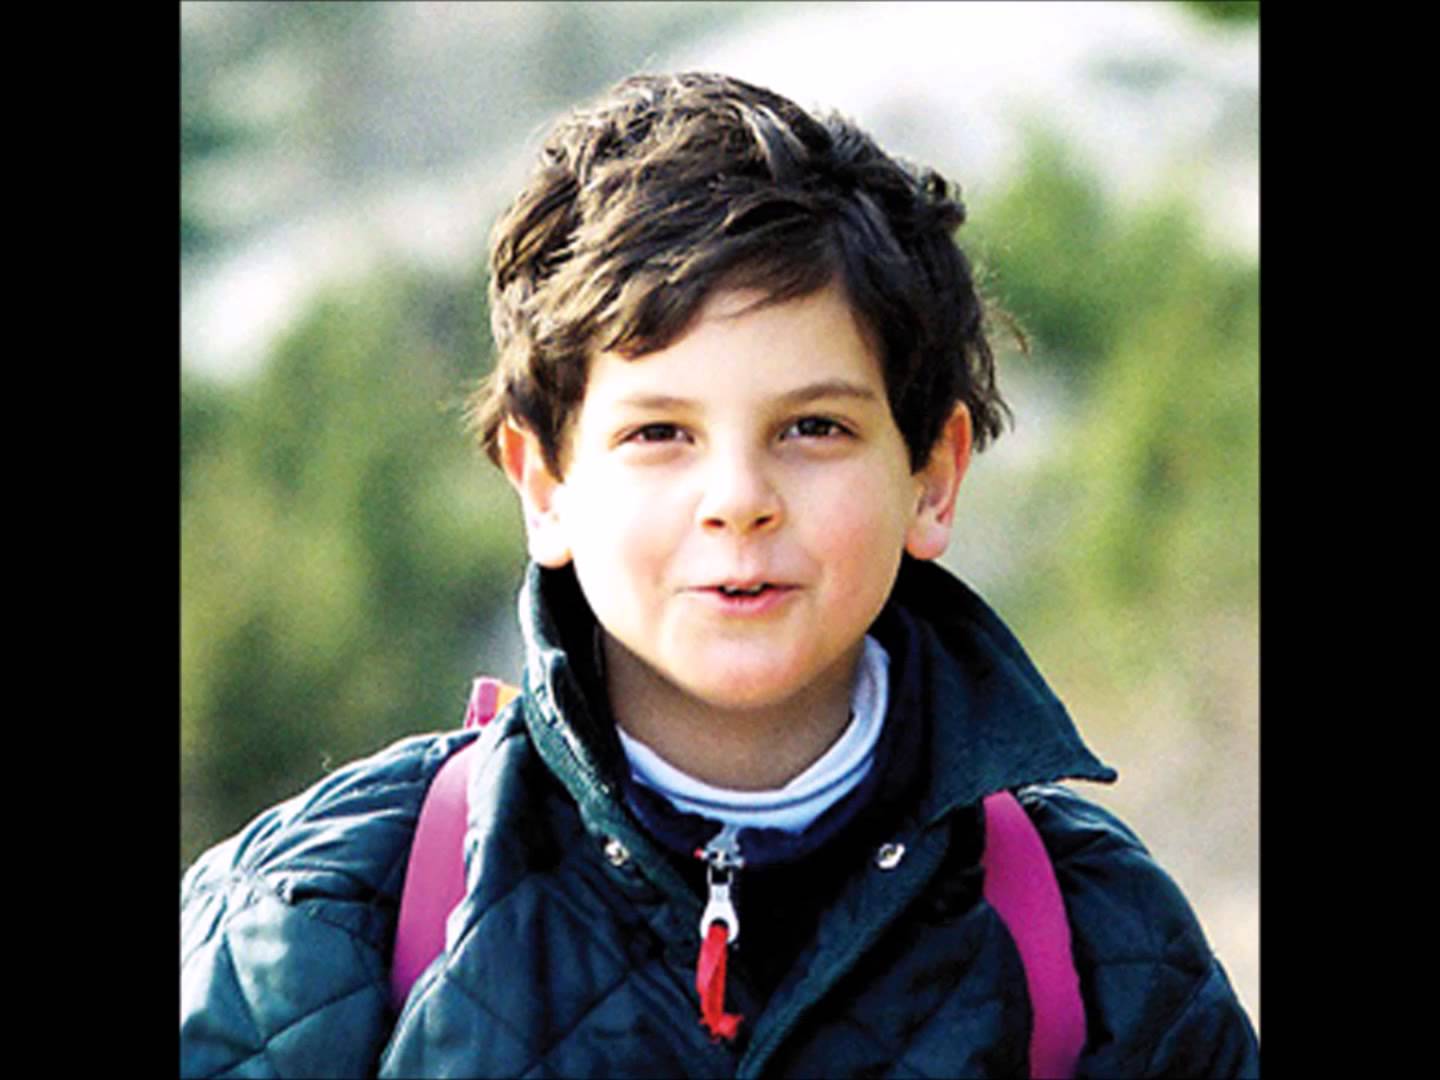 Carlo Acutis rond de leeftijd van 6 jaar.